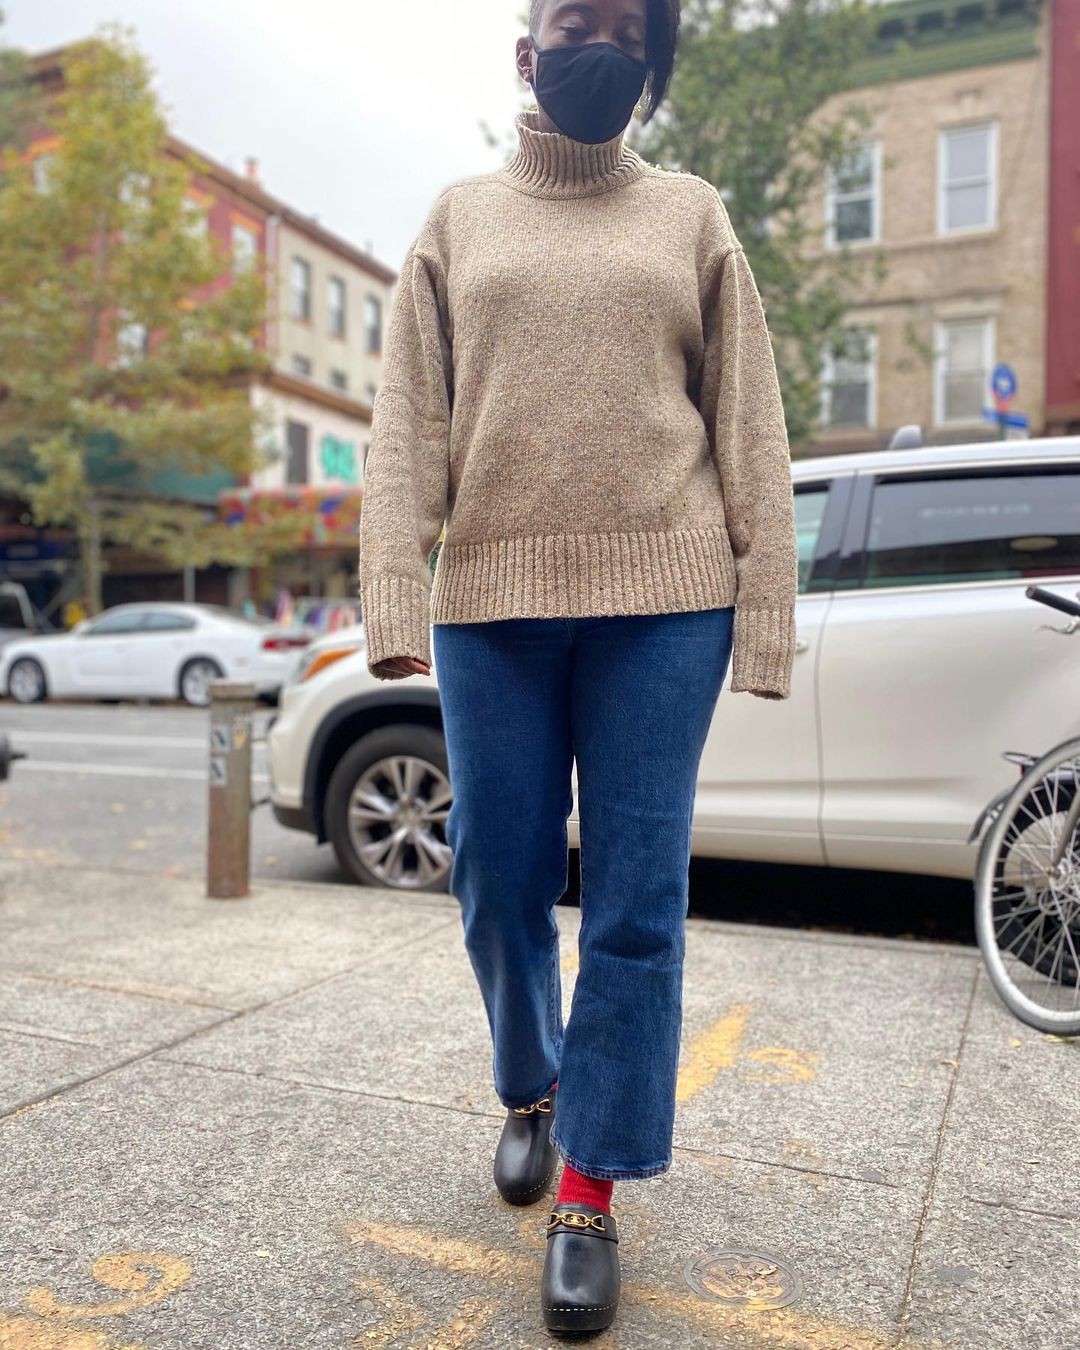 Tamancos dão toque vintage ao look jeans + top (Foto: Reprodução/Instagram Nikki Oggunaike)